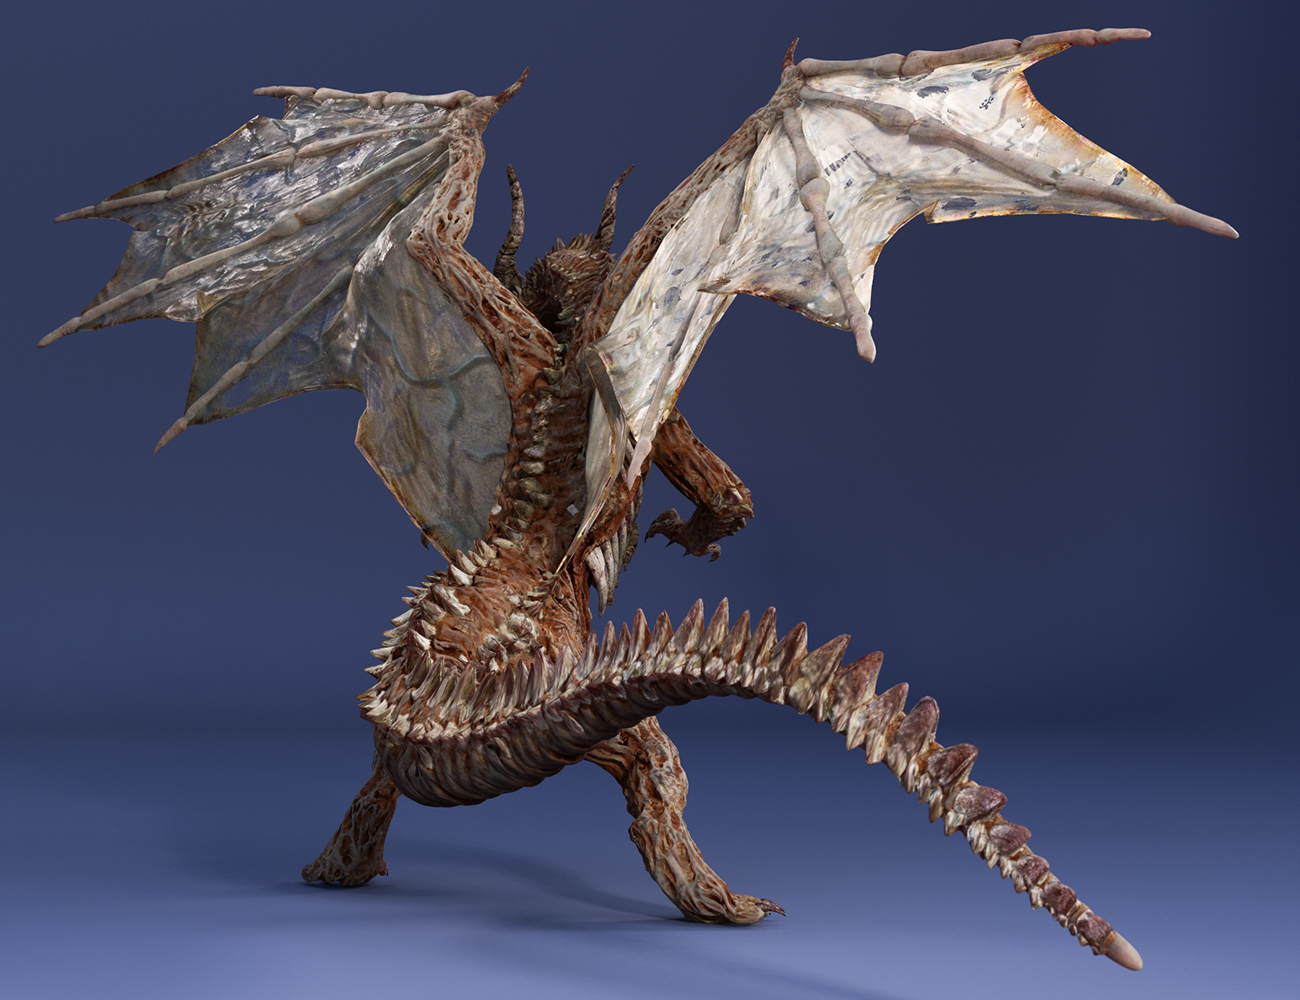 Lich Dragon Carnufex HD for Genesis 8.1 Male by: JoeQuick, 3D Models by Daz 3D